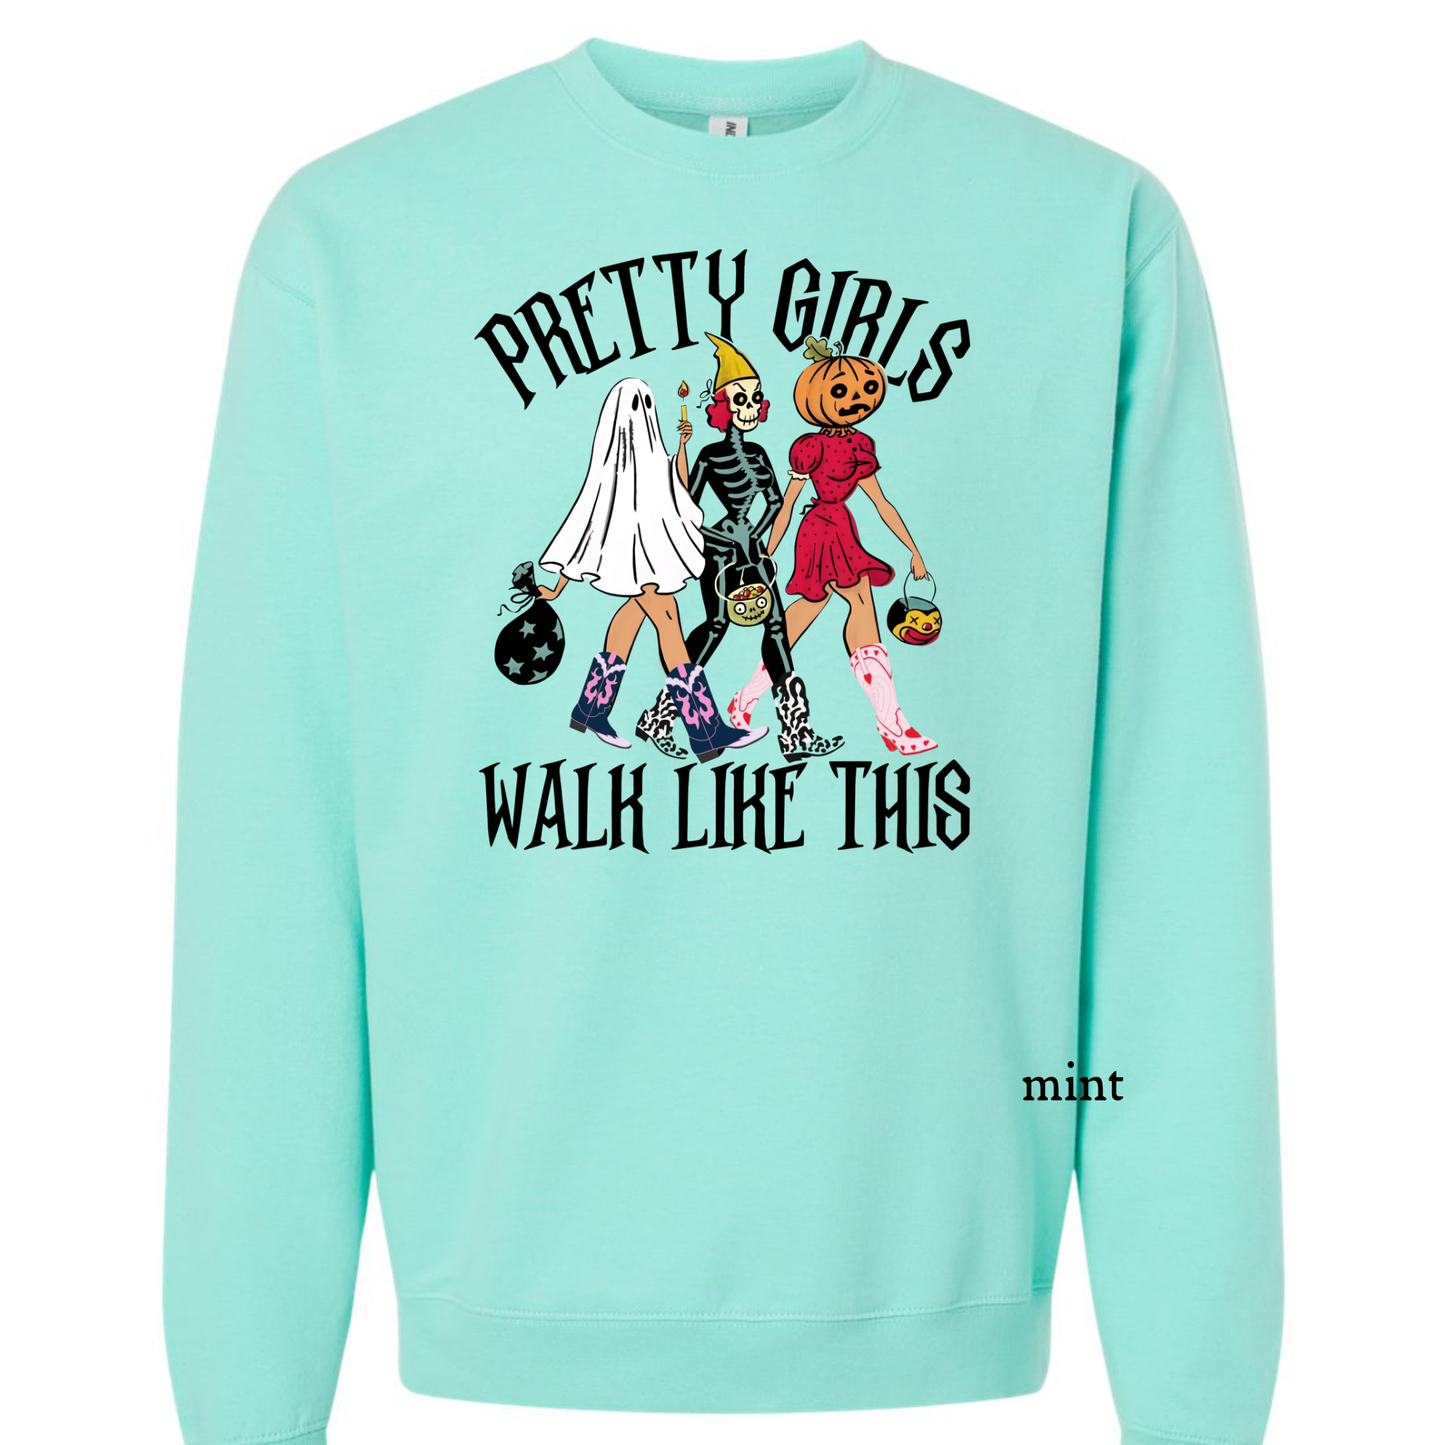 Pretty Girls Walk Like This - Halloween Graphic Sweatshirt